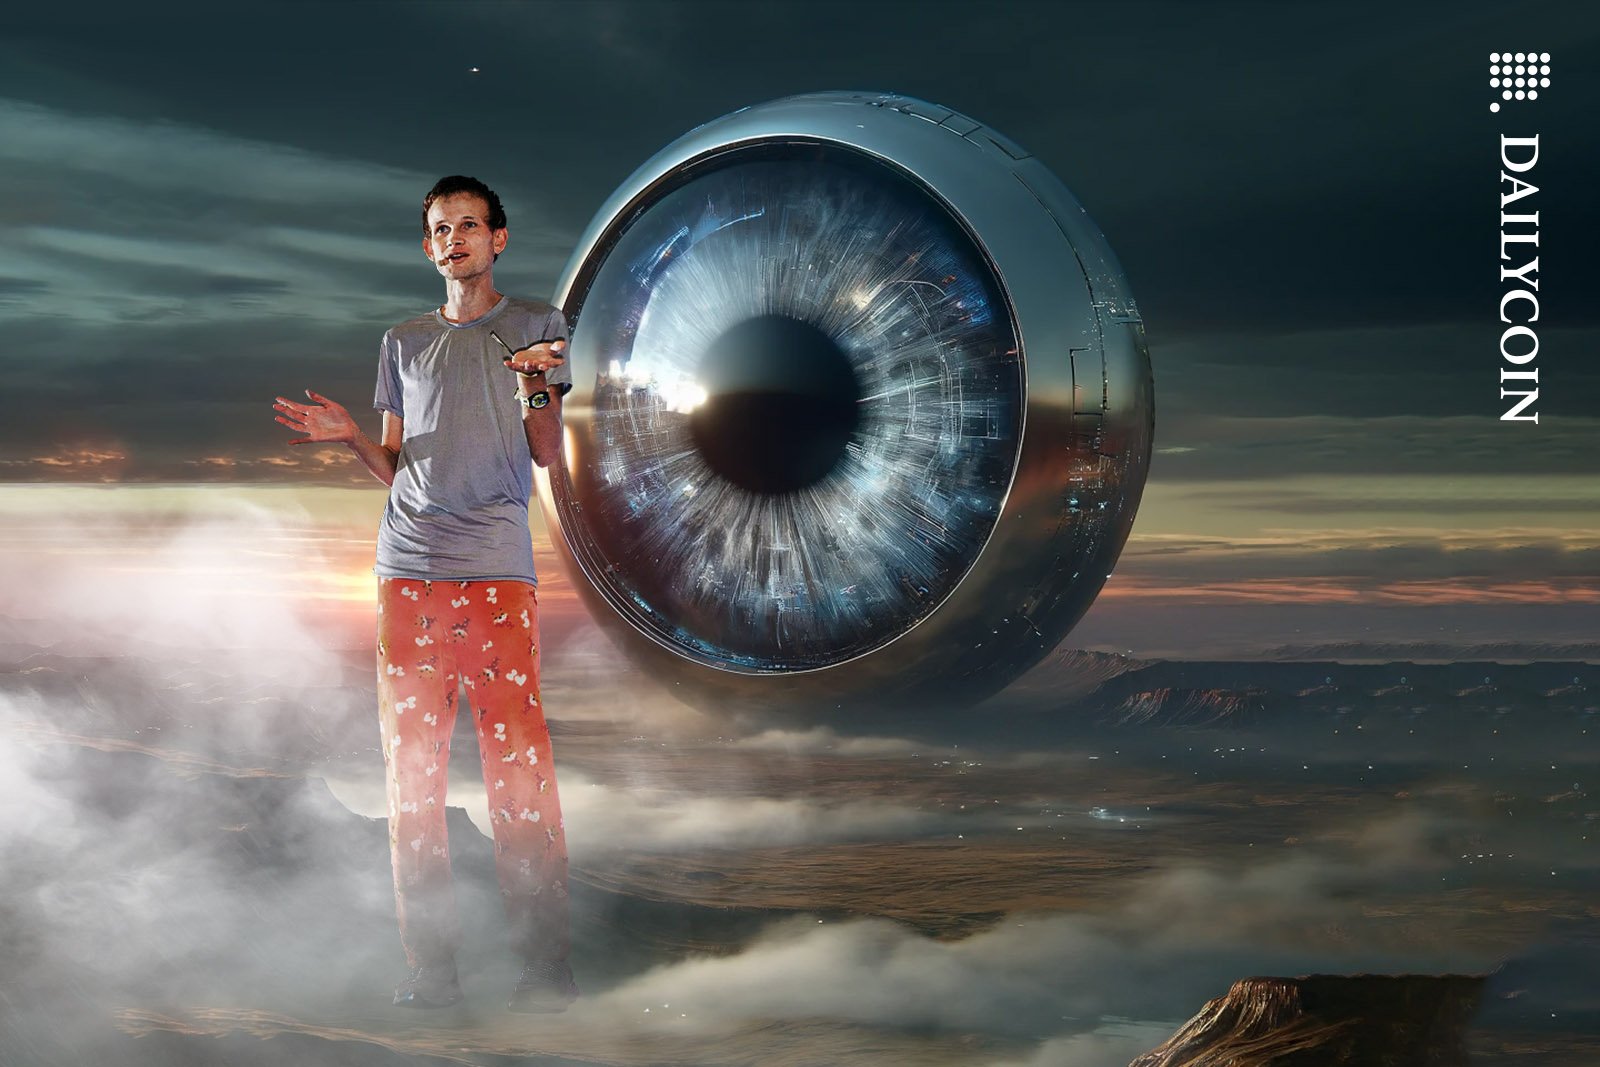 Vitalik Buterin talking in front of a gigantic artificial eyeball.